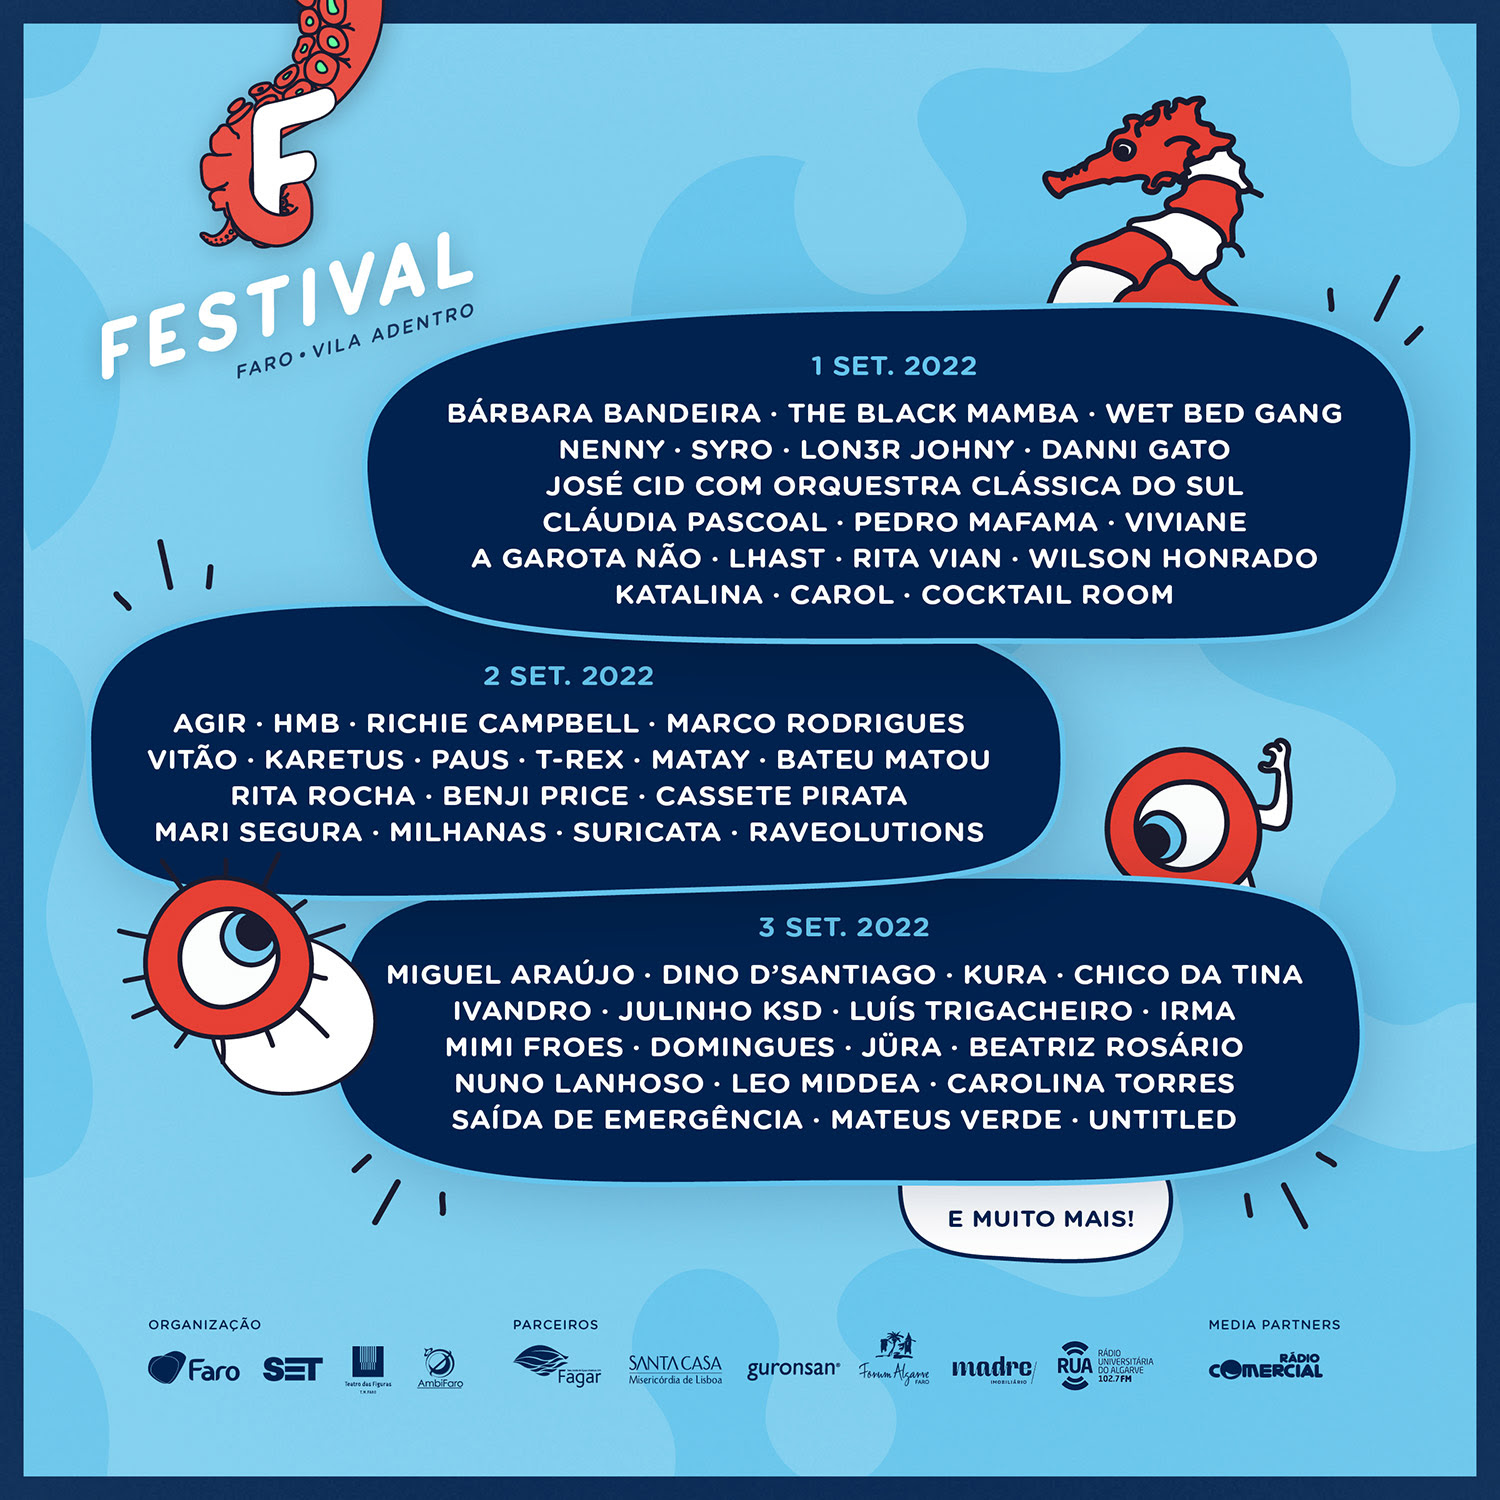 Festival F revela últimos nomes do cartaz, horários e programação paralela